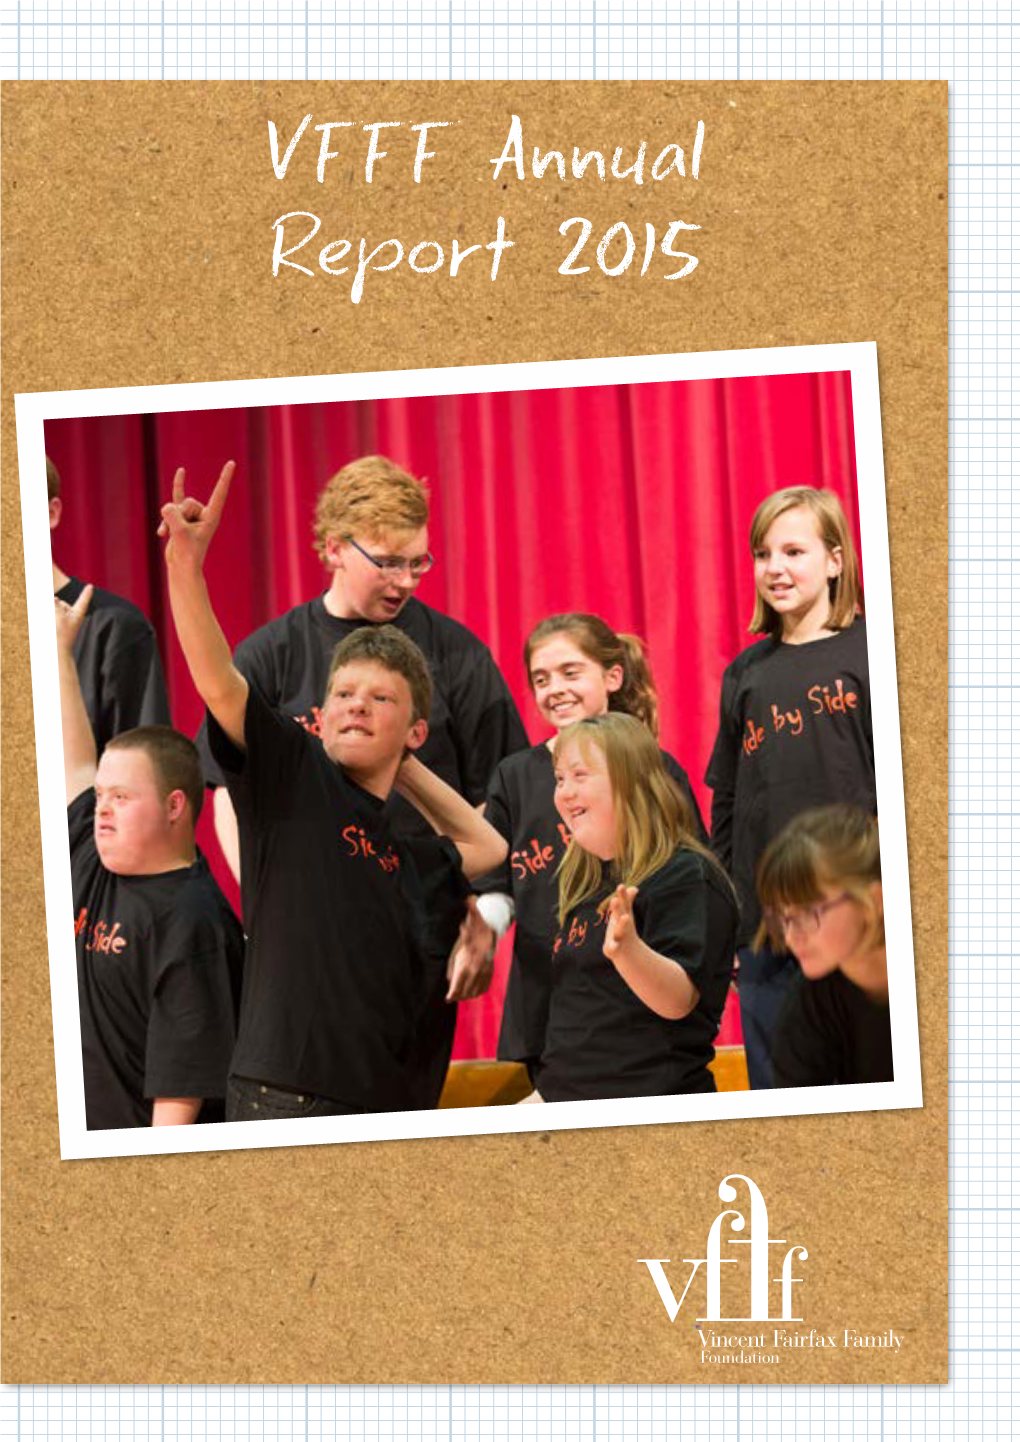 VFFF Annual Report 2015